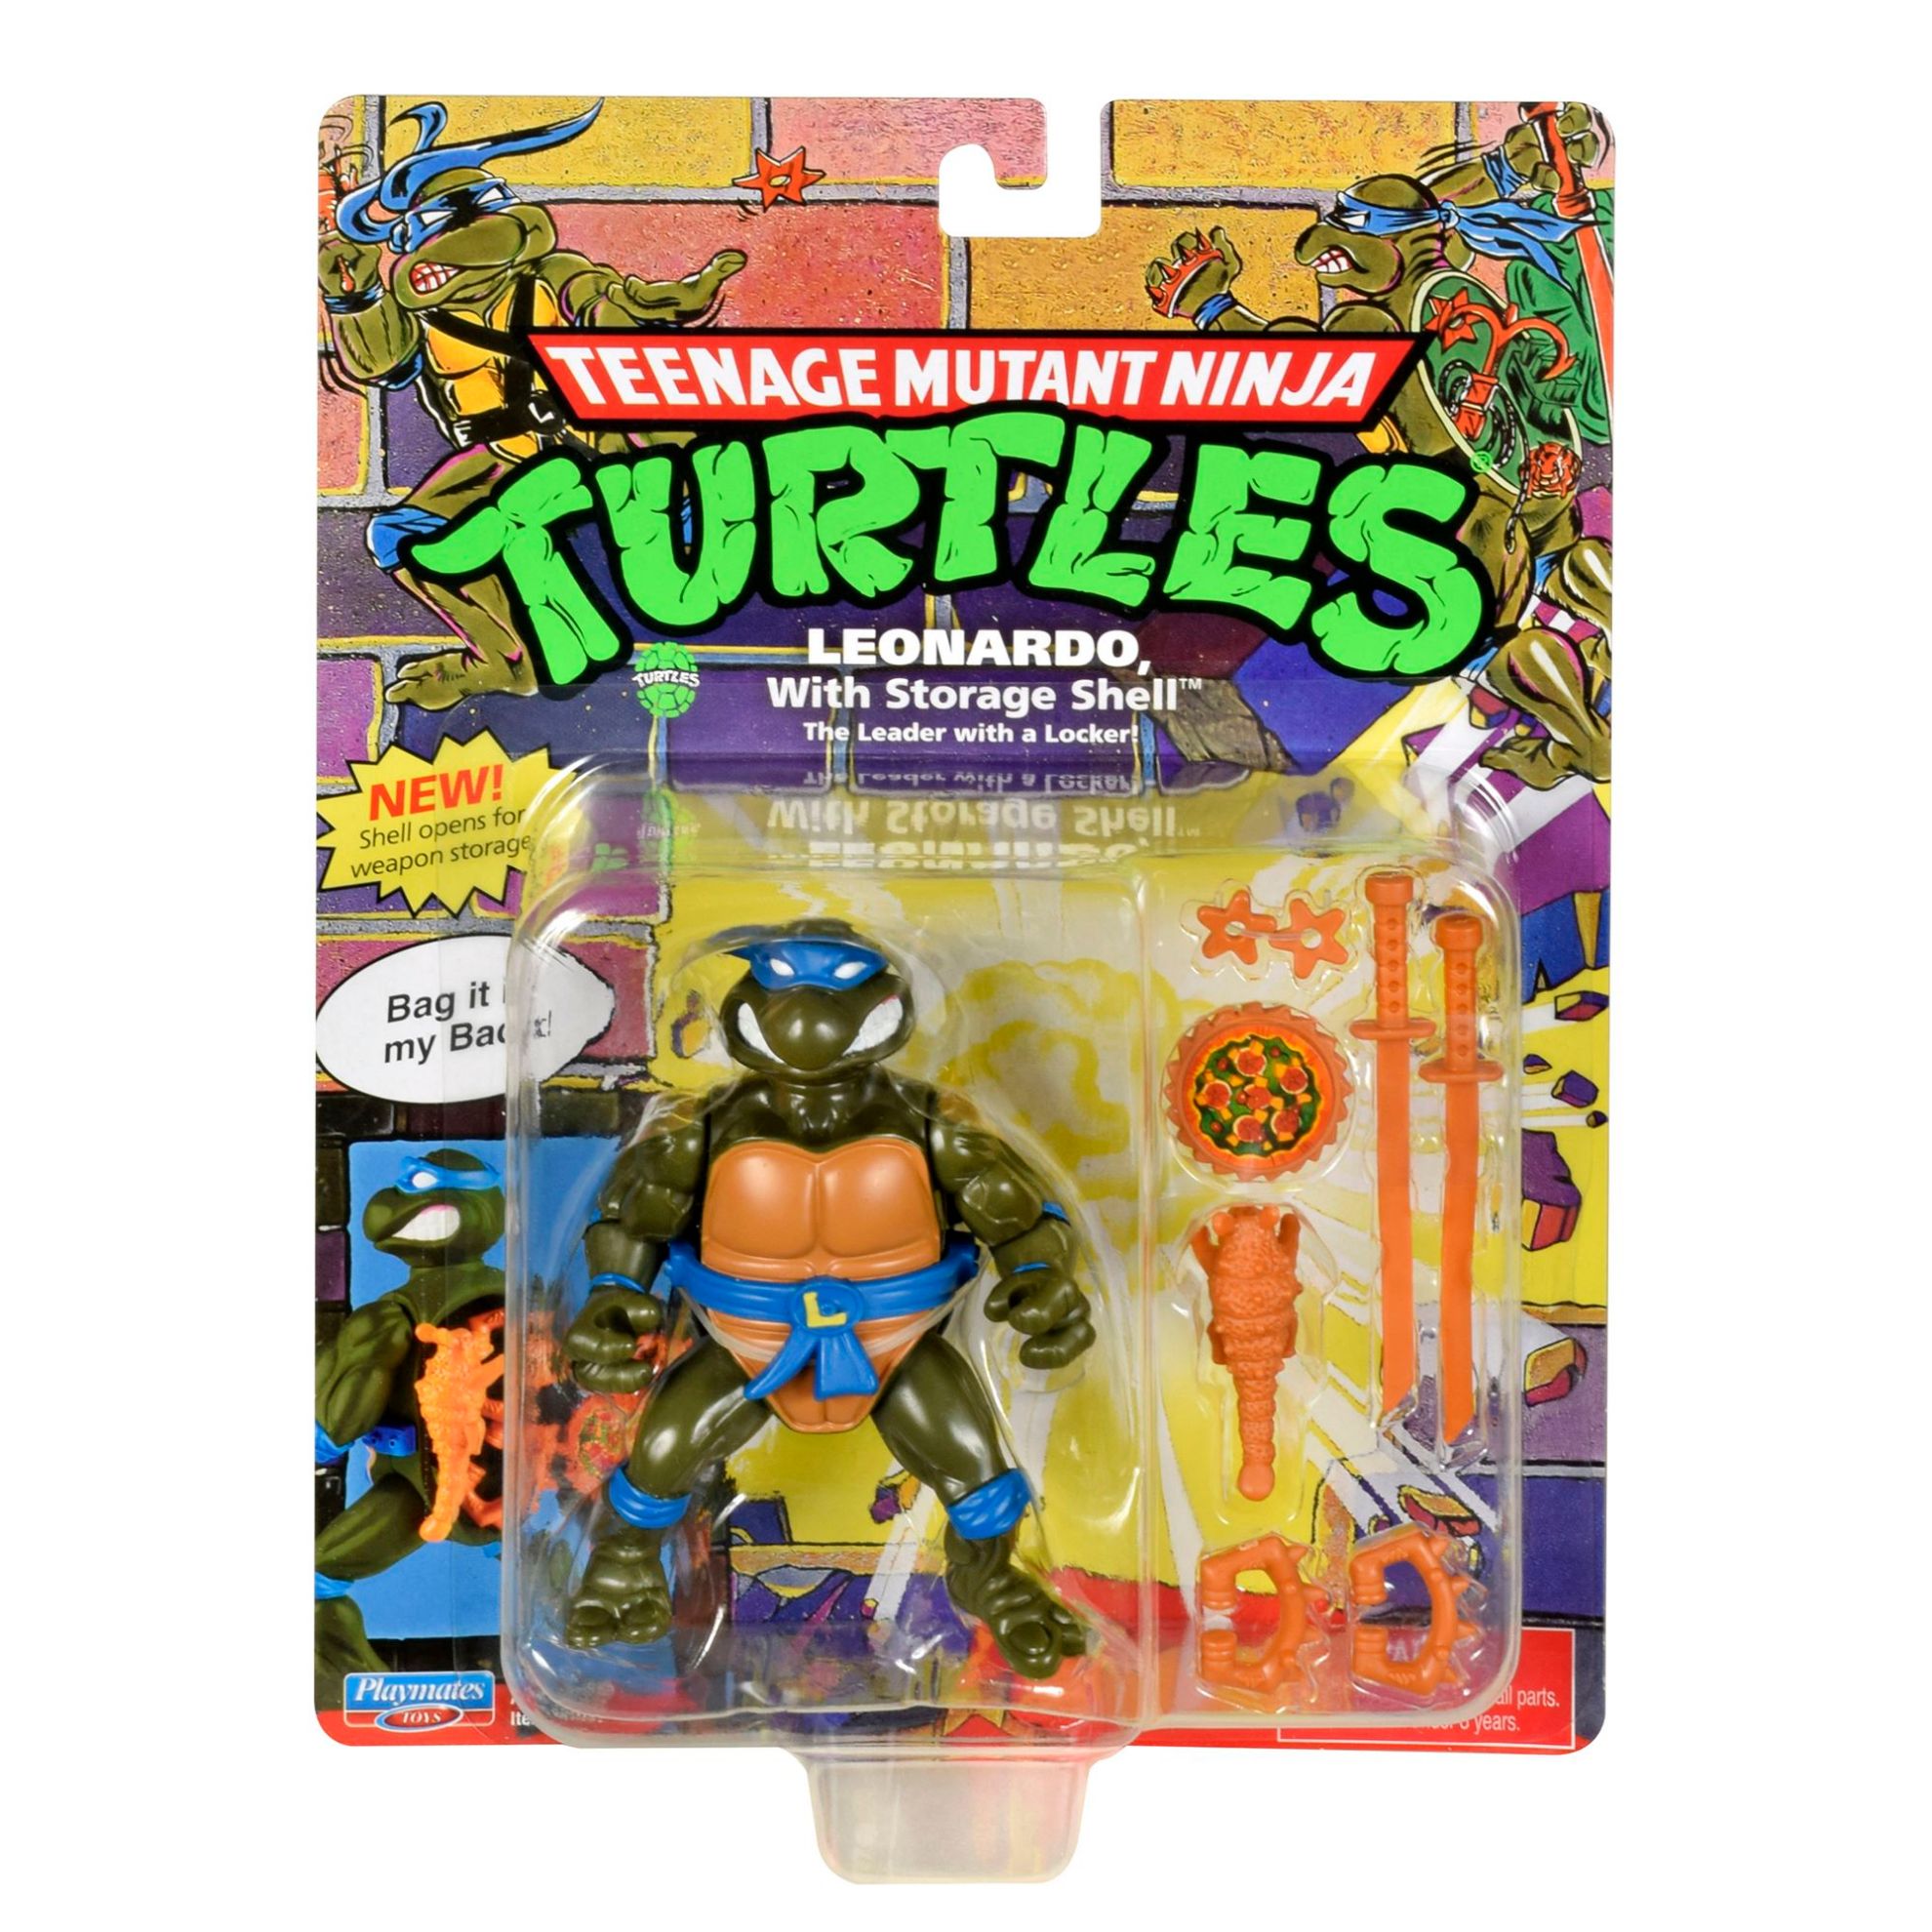 Teenage Mutant Ninja Turtles - Leonardo with Storage Shell